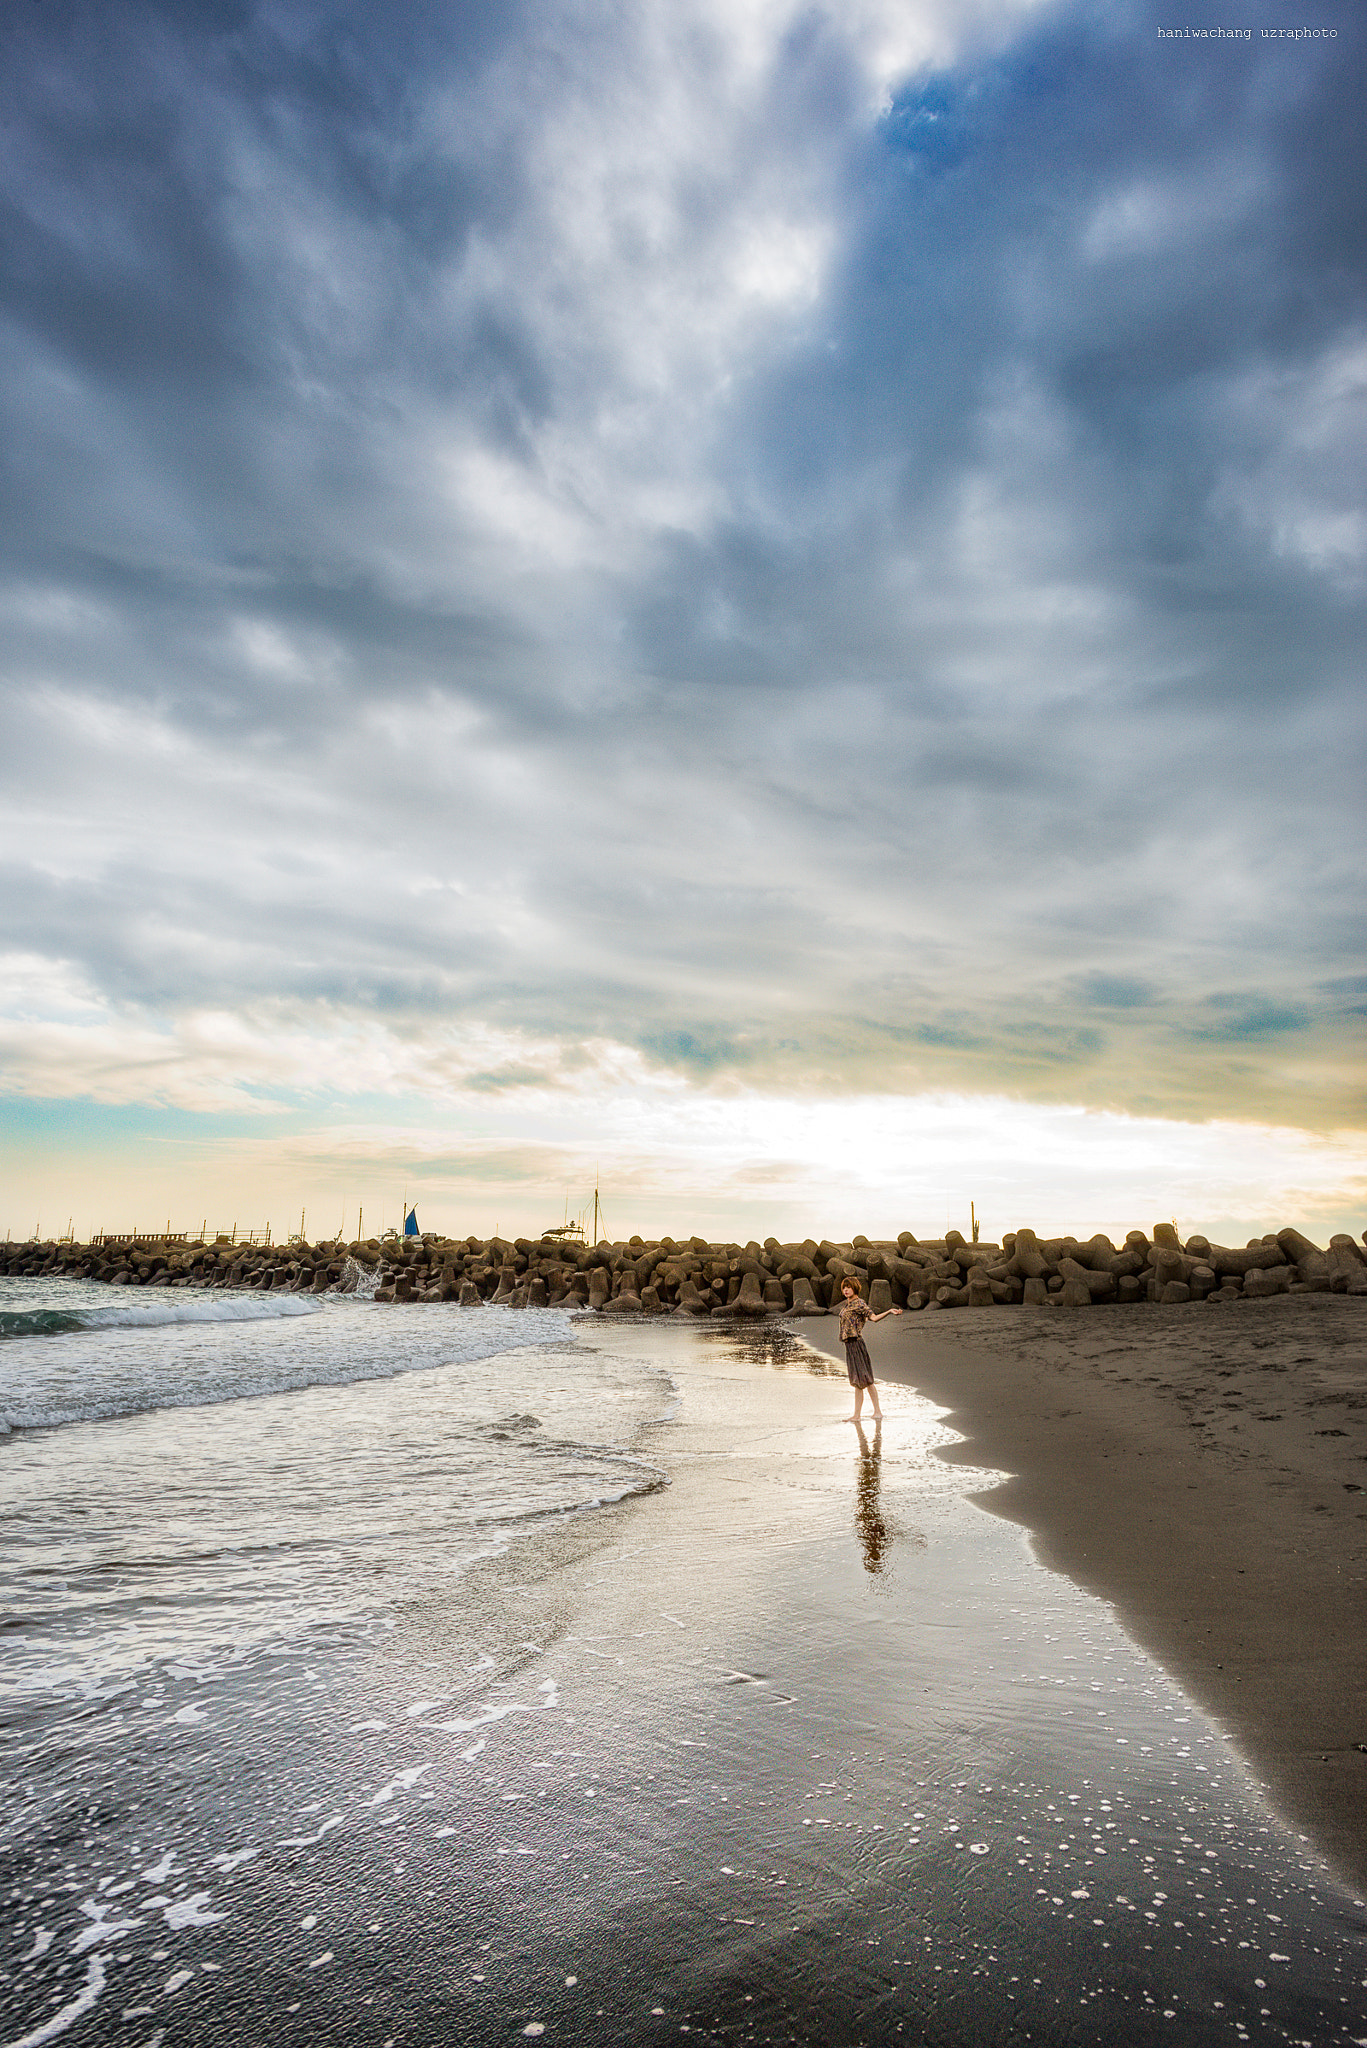 AF Nikkor 18mm f/2.8D sample photo. Sunset beach photography